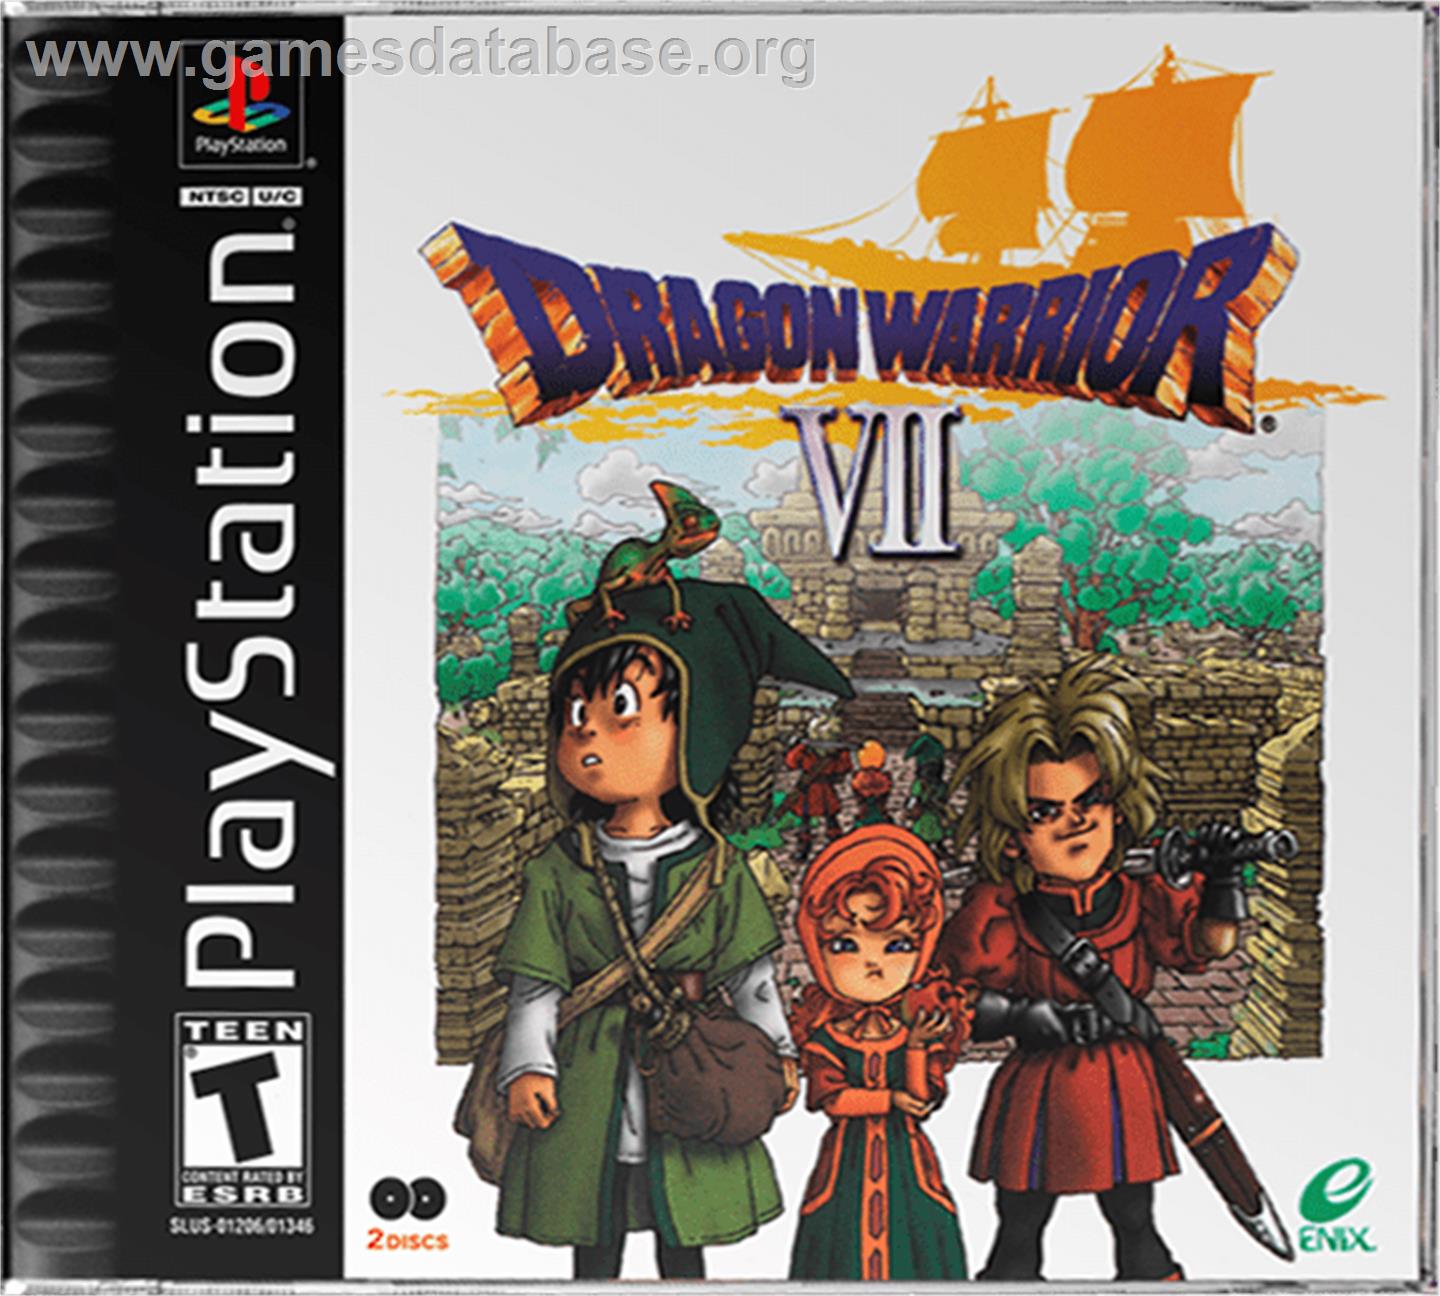 Dragon Warrior VII - Sony Playstation - Artwork - Box